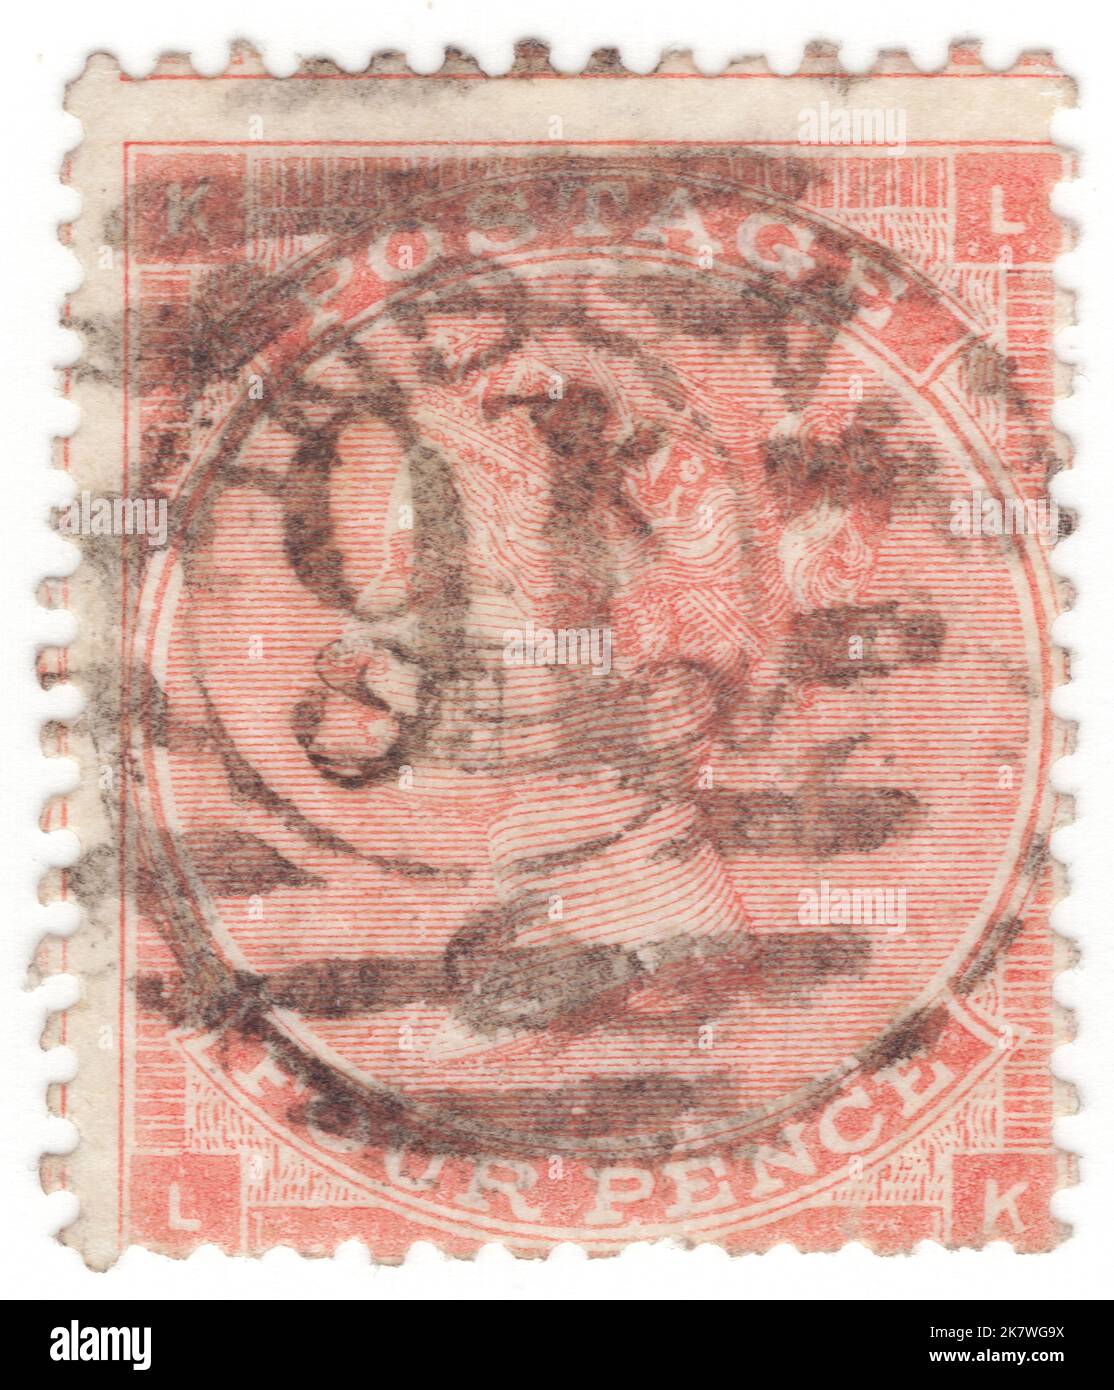 ROYAUME-UNI - 1862: Un timbre-poste de 4 pence vermilion montrant le portrait de la reine Victoria Banque D'Images